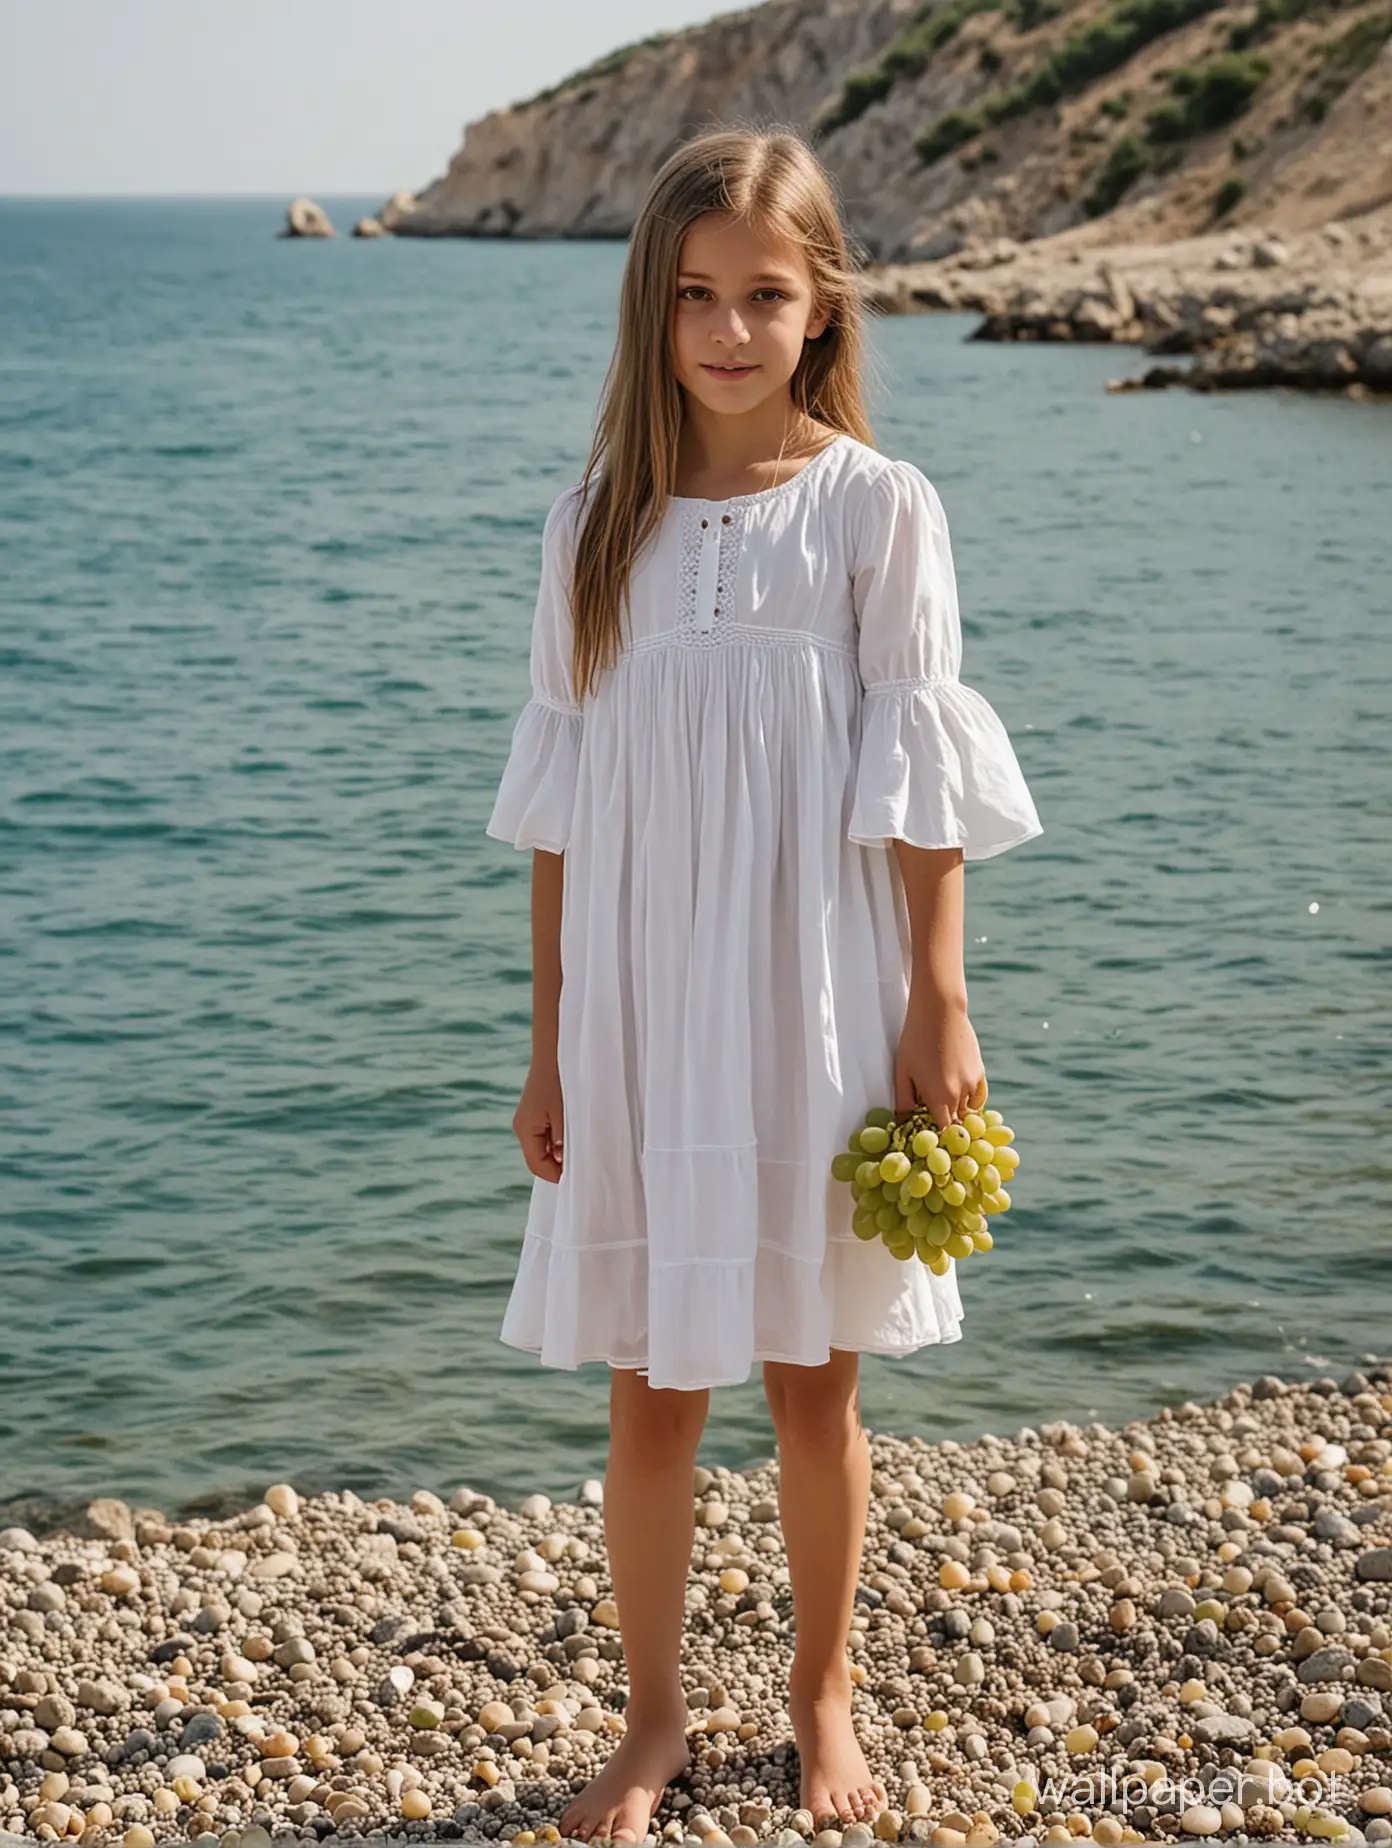 Крым, возле моря, девочка 10 лет в коротком белом платье с гроздью винограда в руках